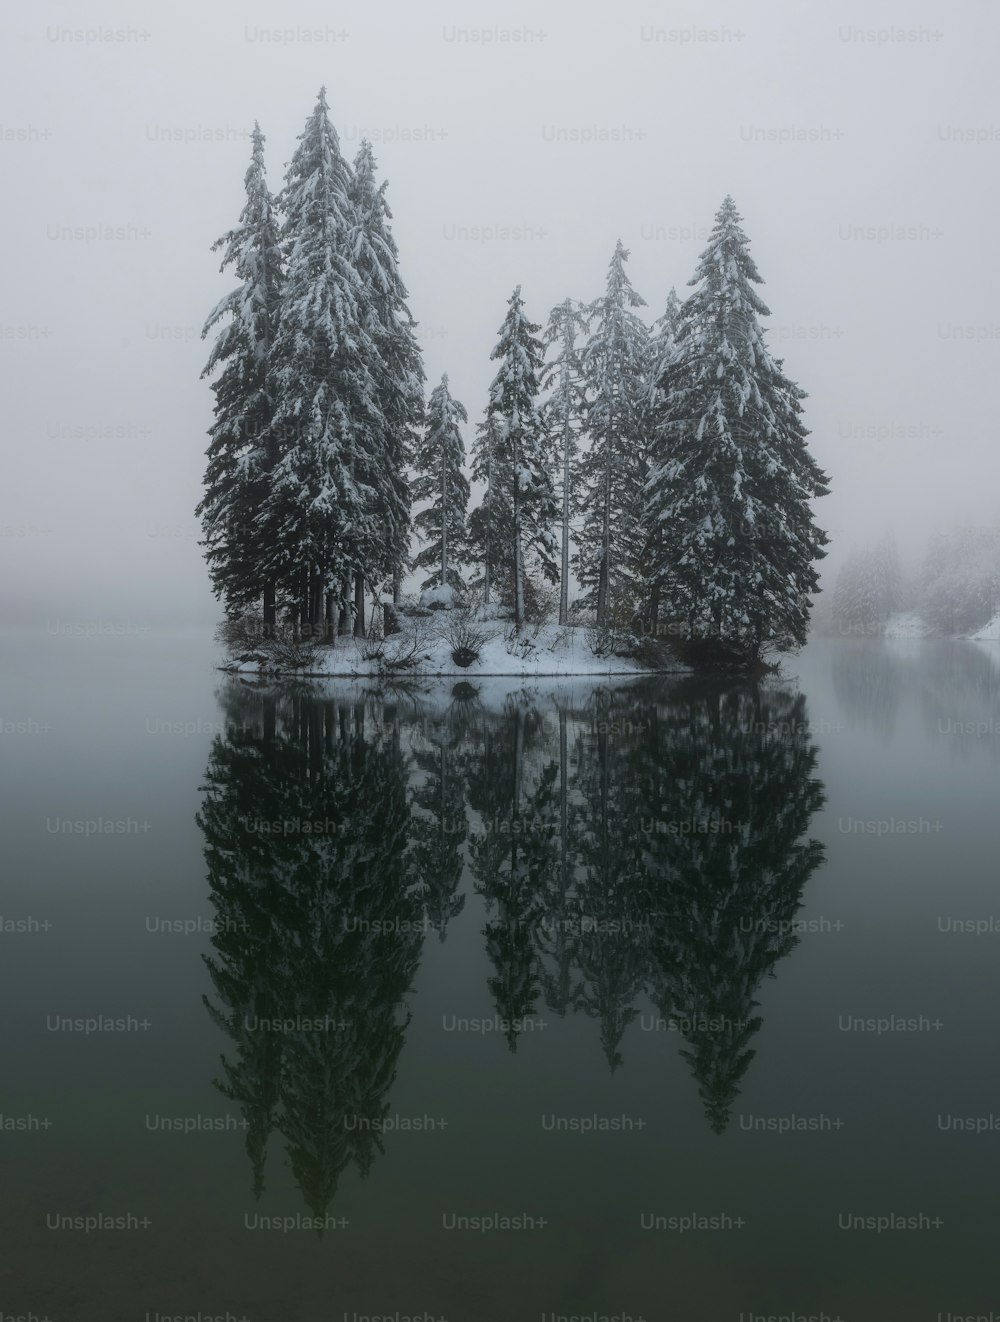 uno specchio d'acqua circondato da alberi coperti di neve